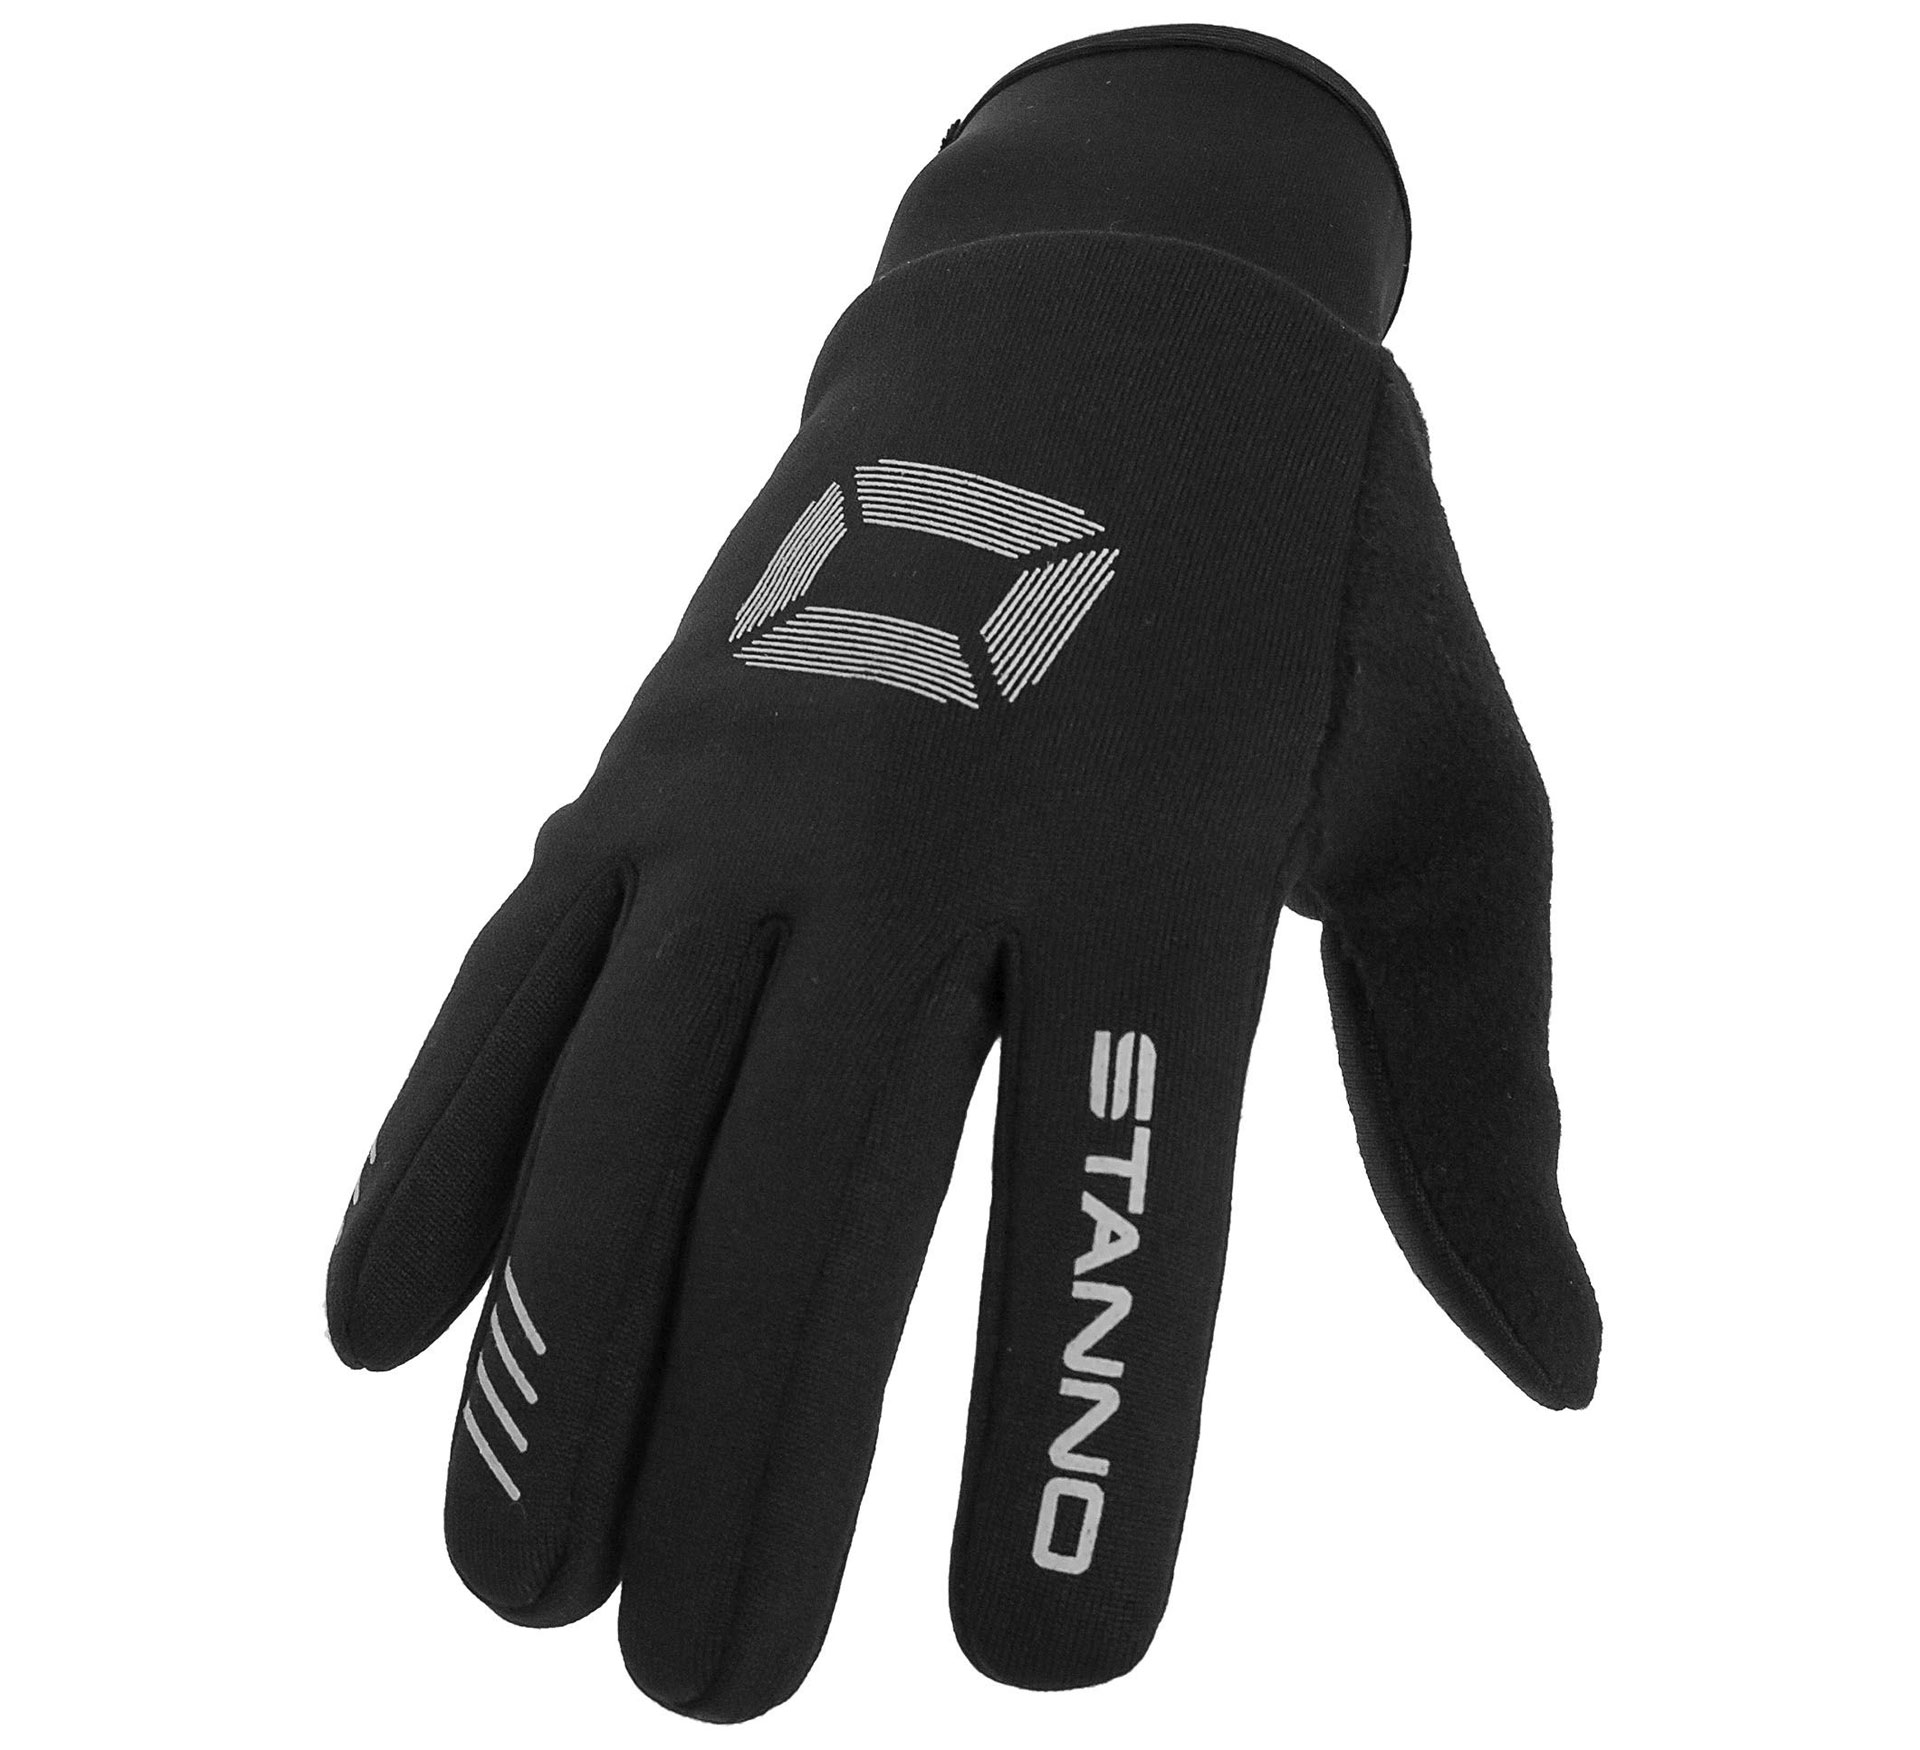 Stanno Player Glove